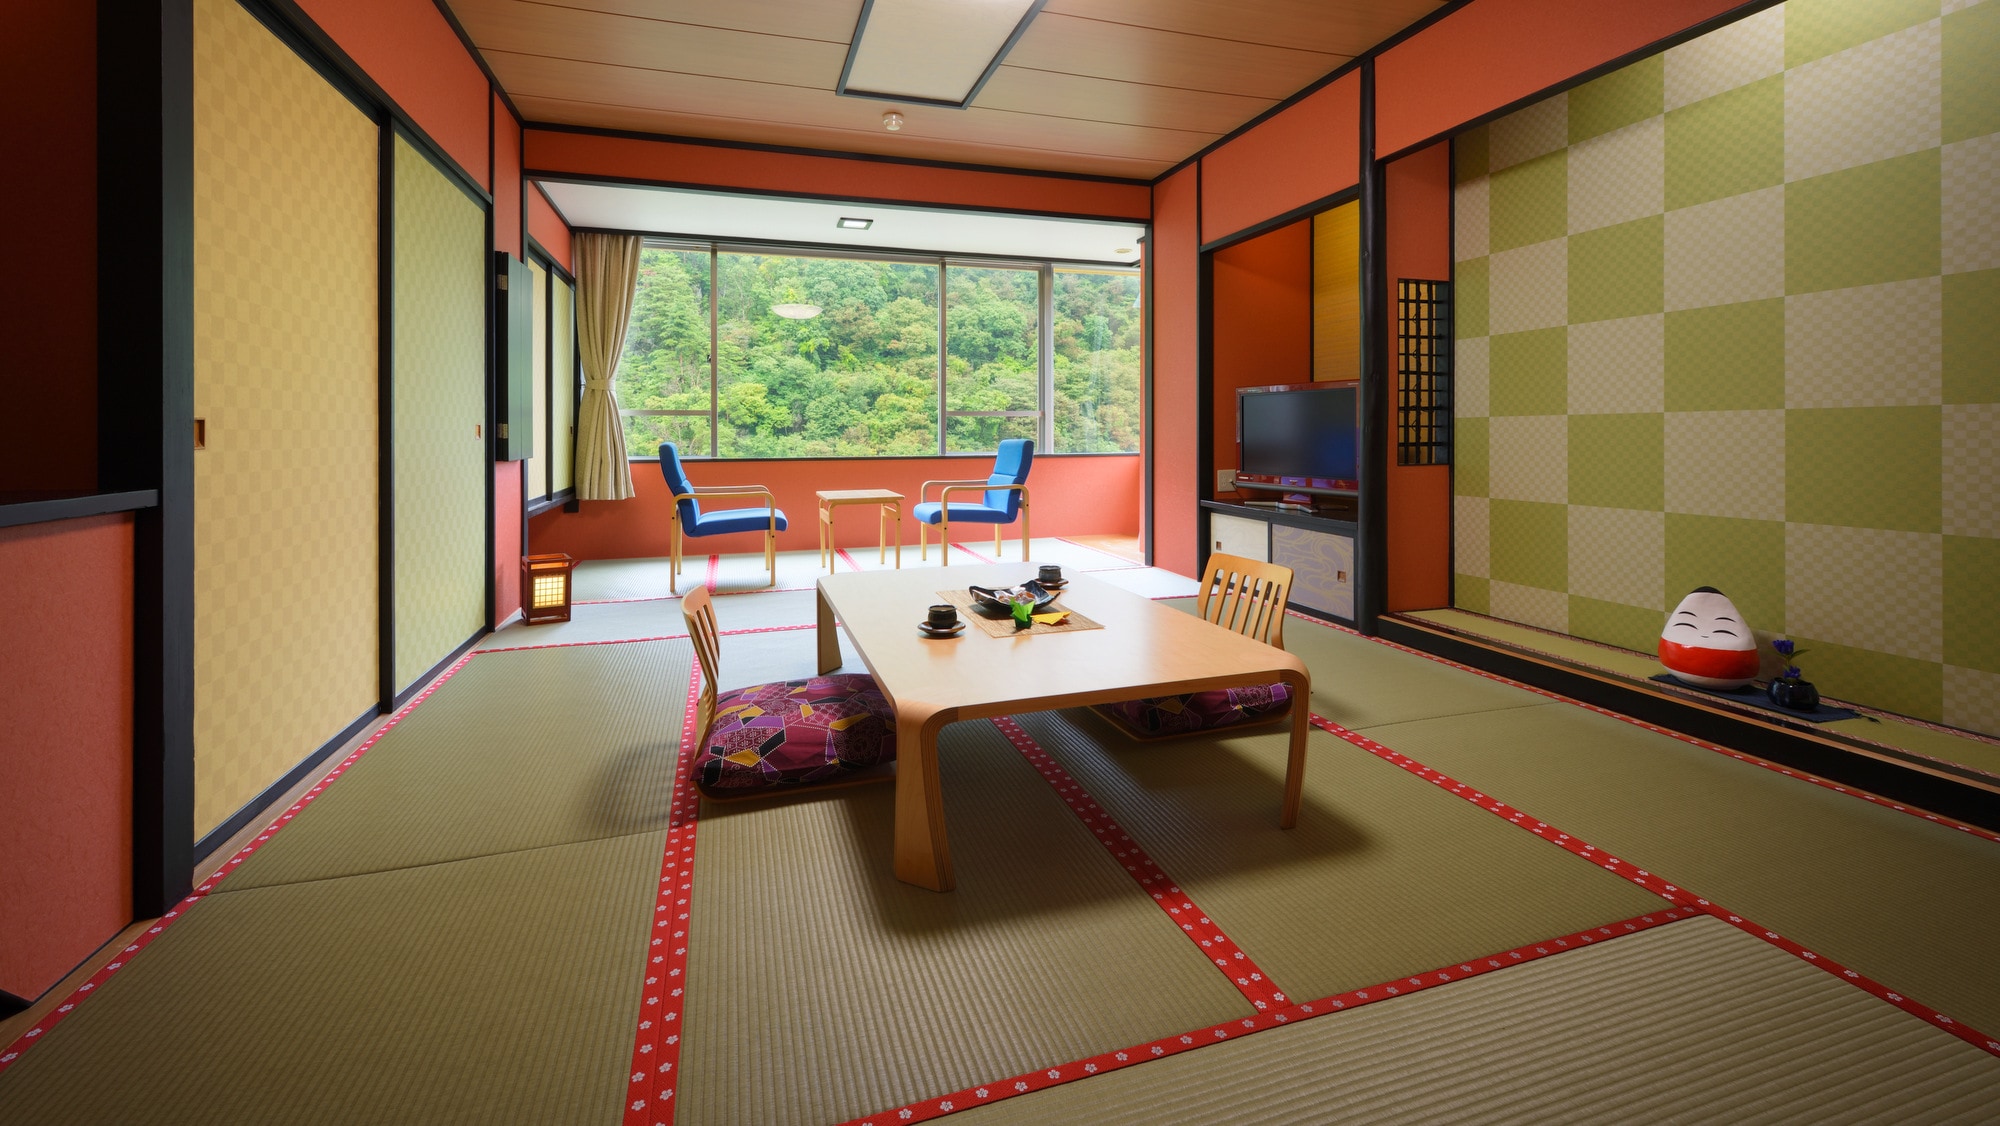 【객실 일례】 계곡 측 일본식 방 10 다다미. 계절의 변화를 방에서 즐겨주세요